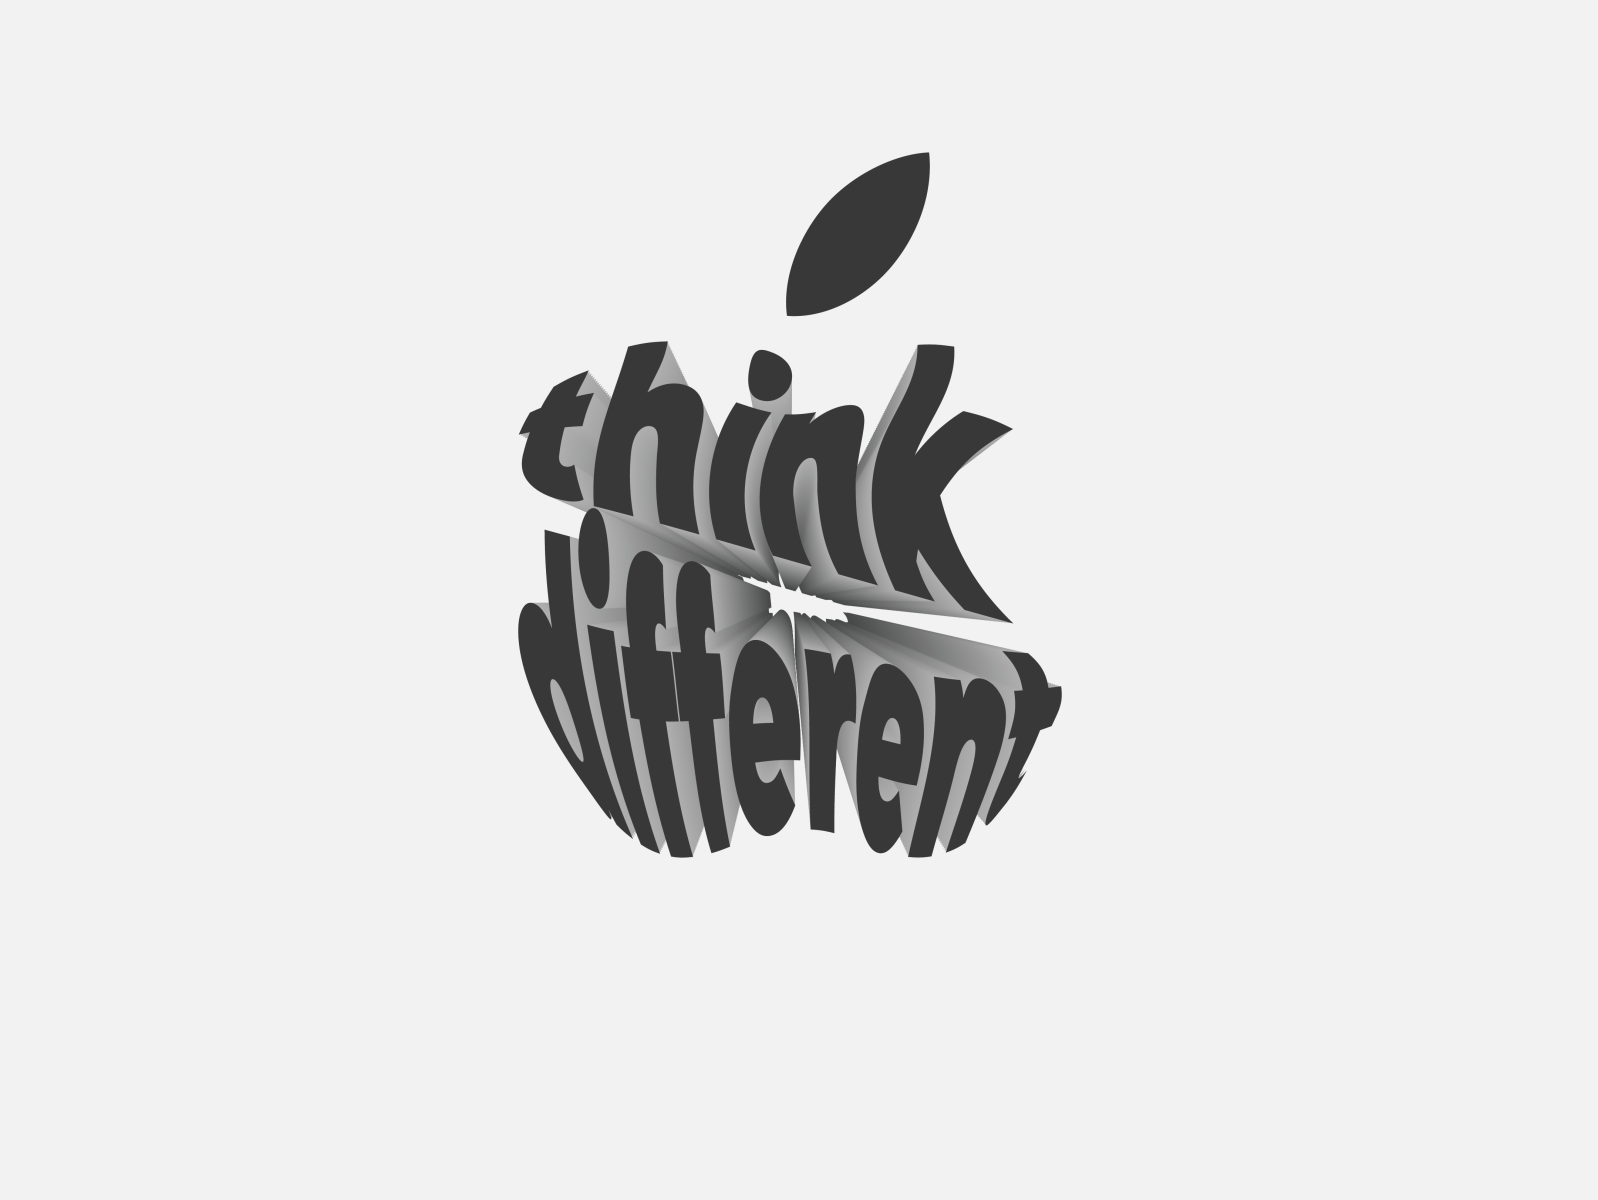 apple slogan logo by Gabriele D'Ettorre on Dribbble